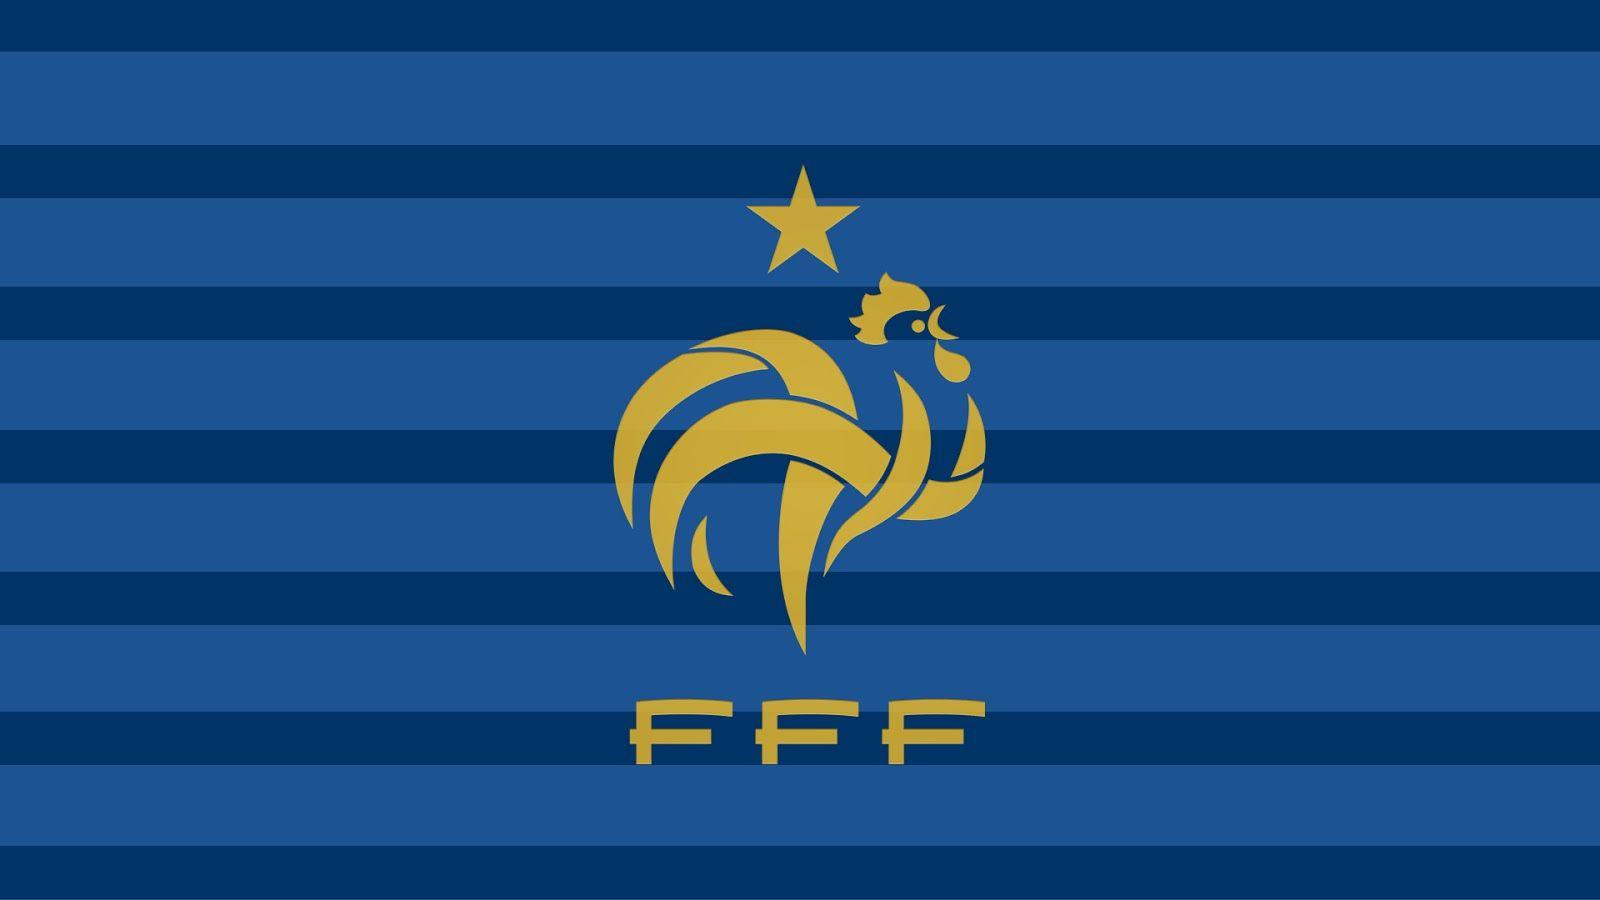 France Logo Team Football FFF wallpaper 2018 in Football